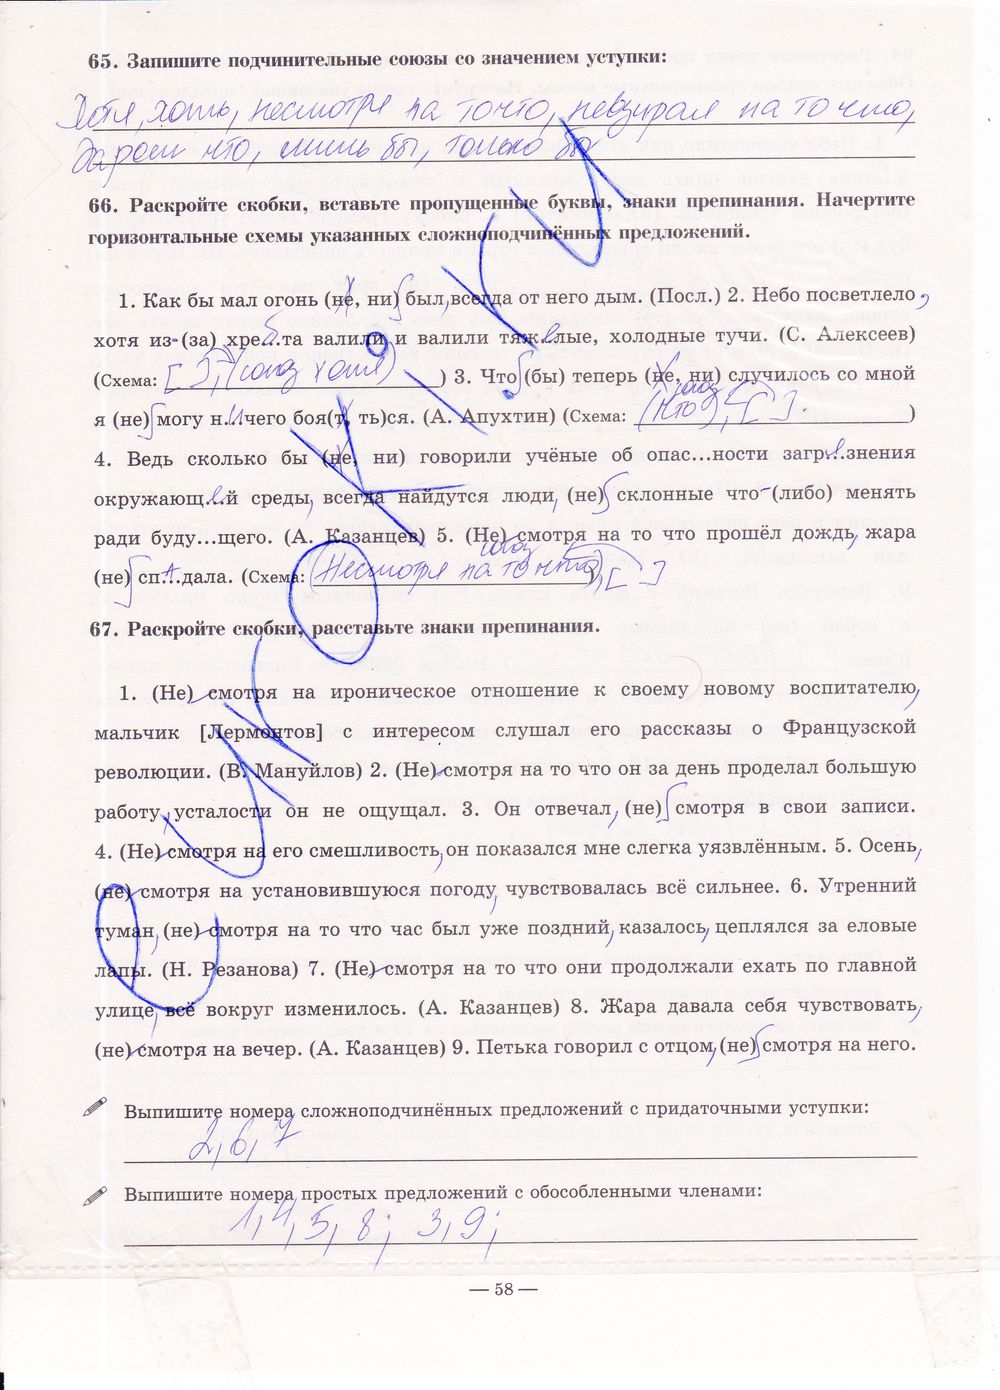 ГДЗ Русский язык 9 класс - стр. 58